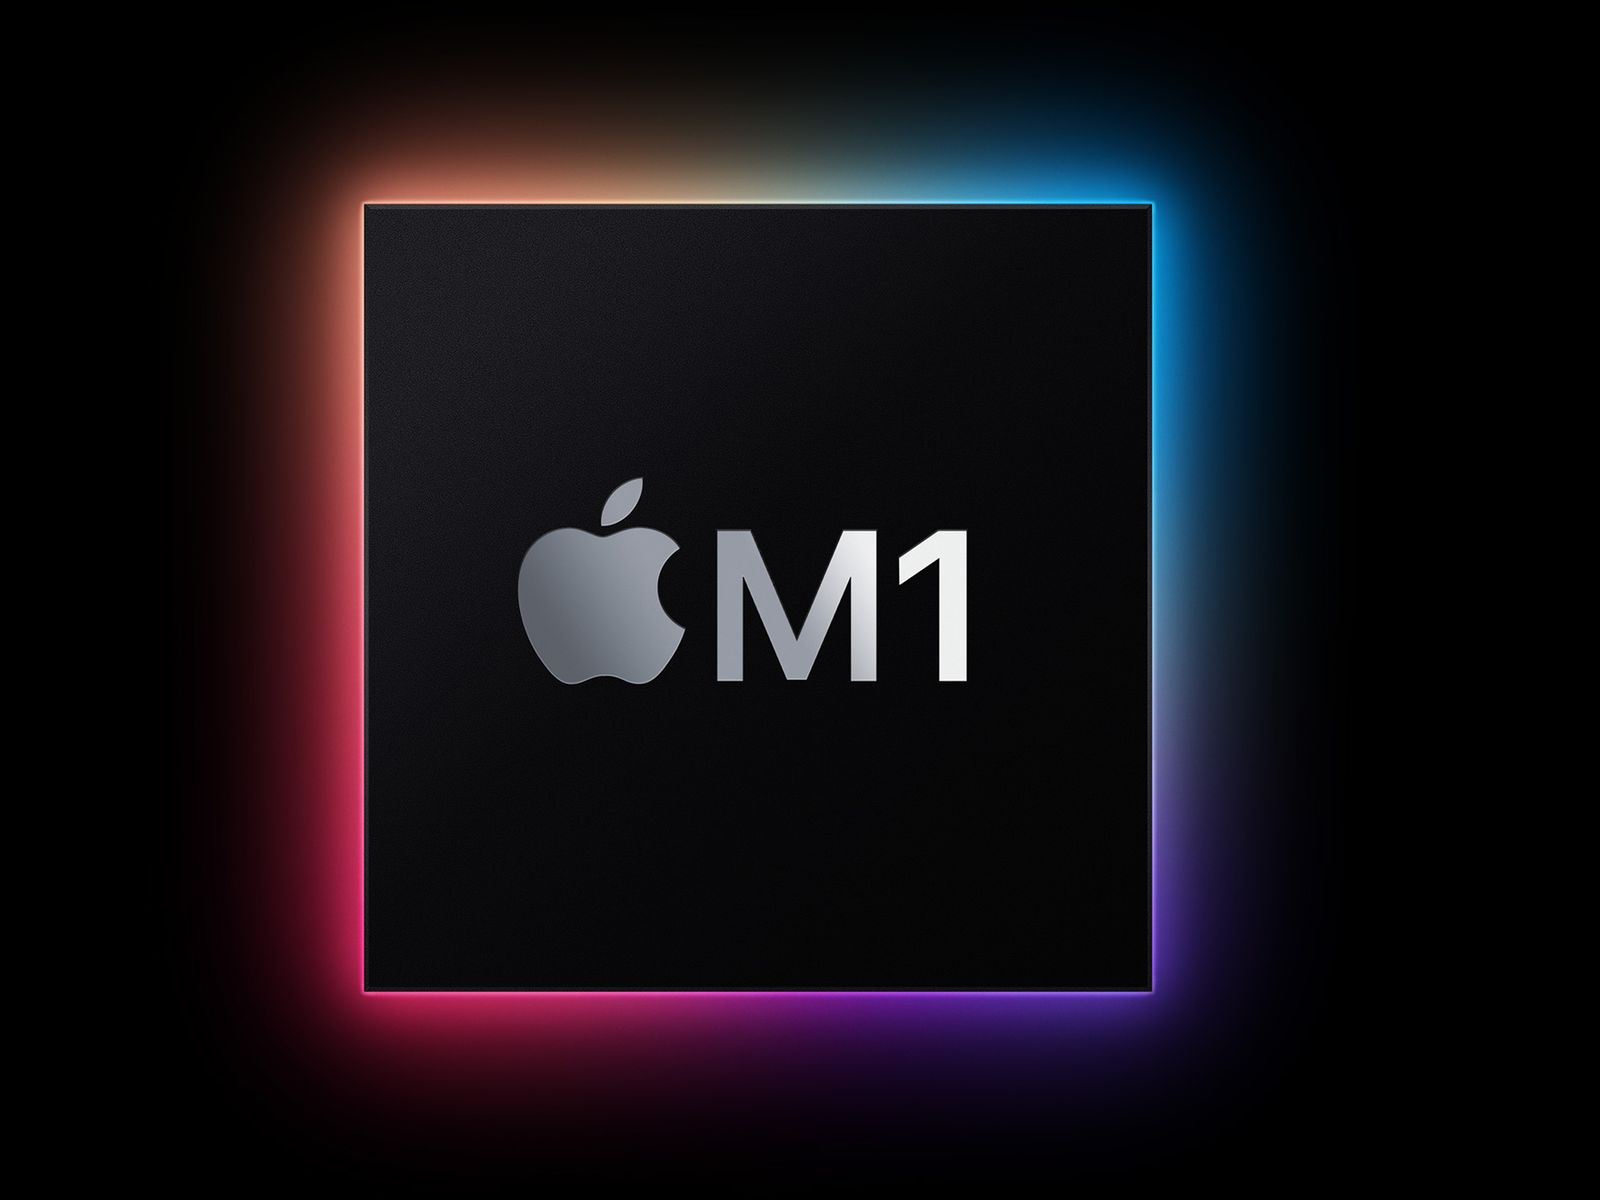 Nếu bạn đam mê công nghệ, bạn không thể bỏ qua sự kết hợp hoàn hảo giữa chip M1 và màn hình cảm ứng trên máy tính Mac! Đó là một trải nghiệm độc đáo và thú vị. Đừng bỏ lỡ cơ hội để khám phá thế giới công nghệ đầy sáng tạo này bằng cách xem hình ảnh liên quan.